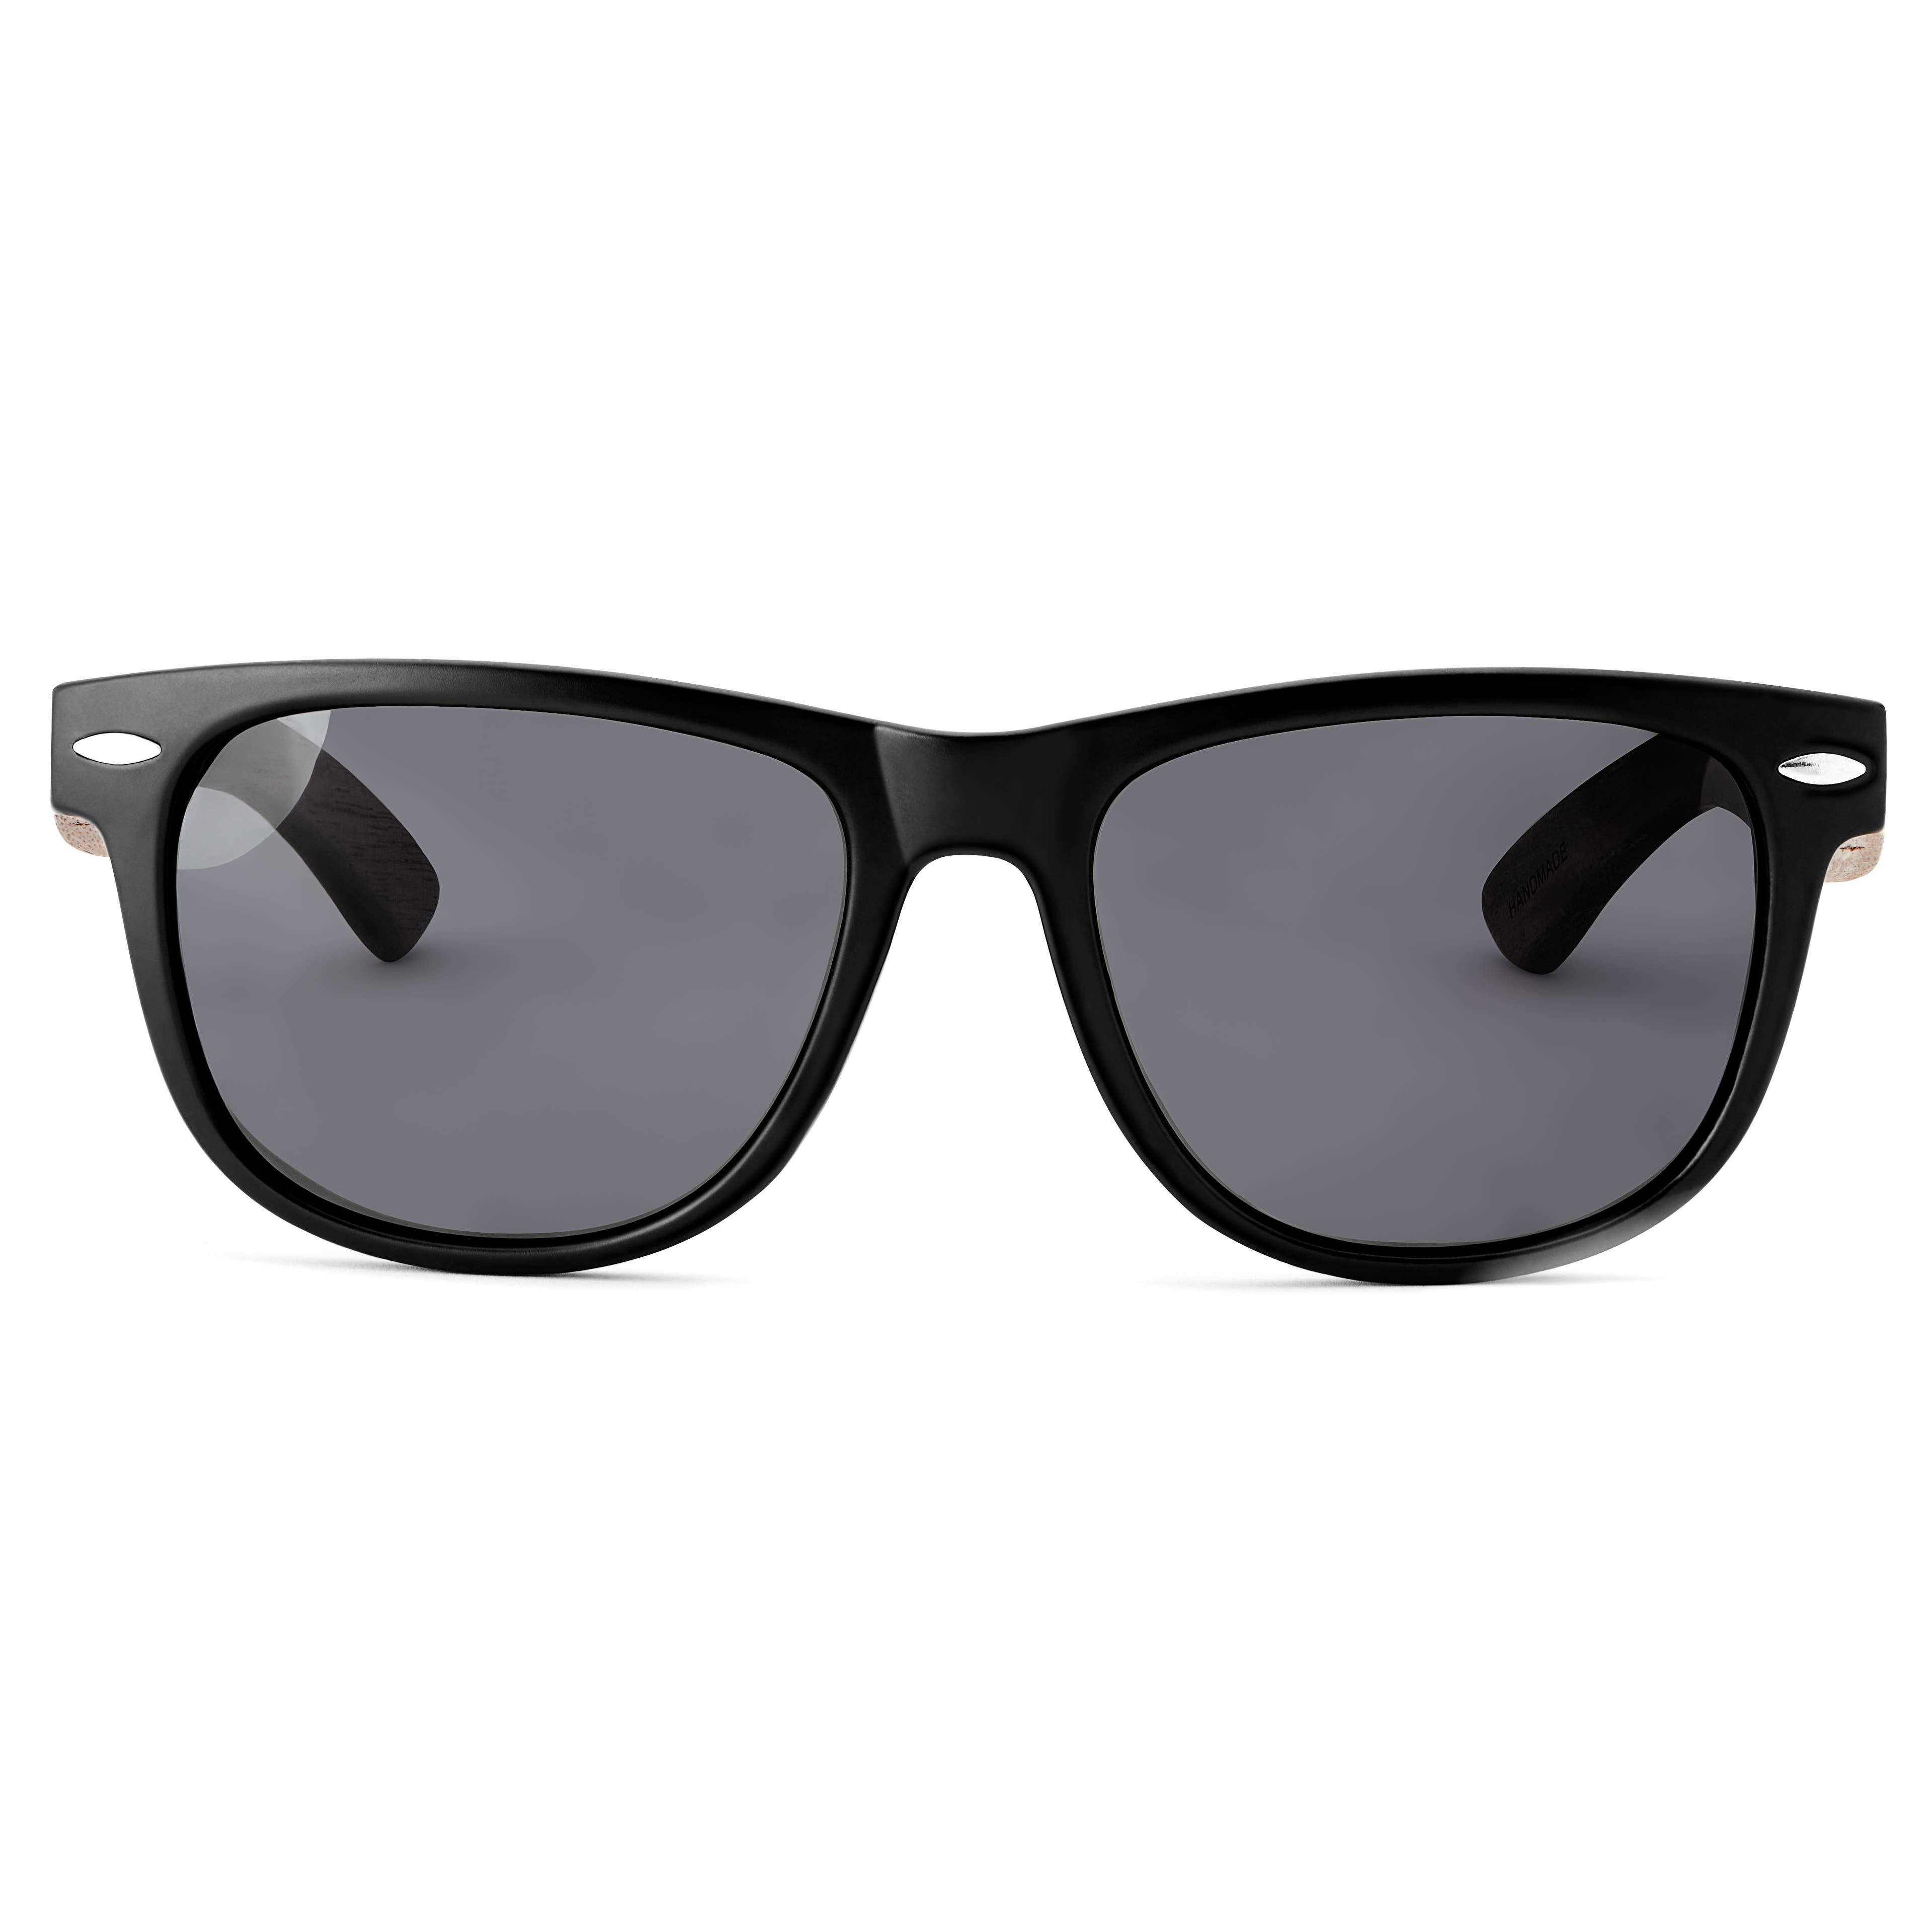 Schwarze polarisierte Retro-Sonnenbrille mit Holzbügeln